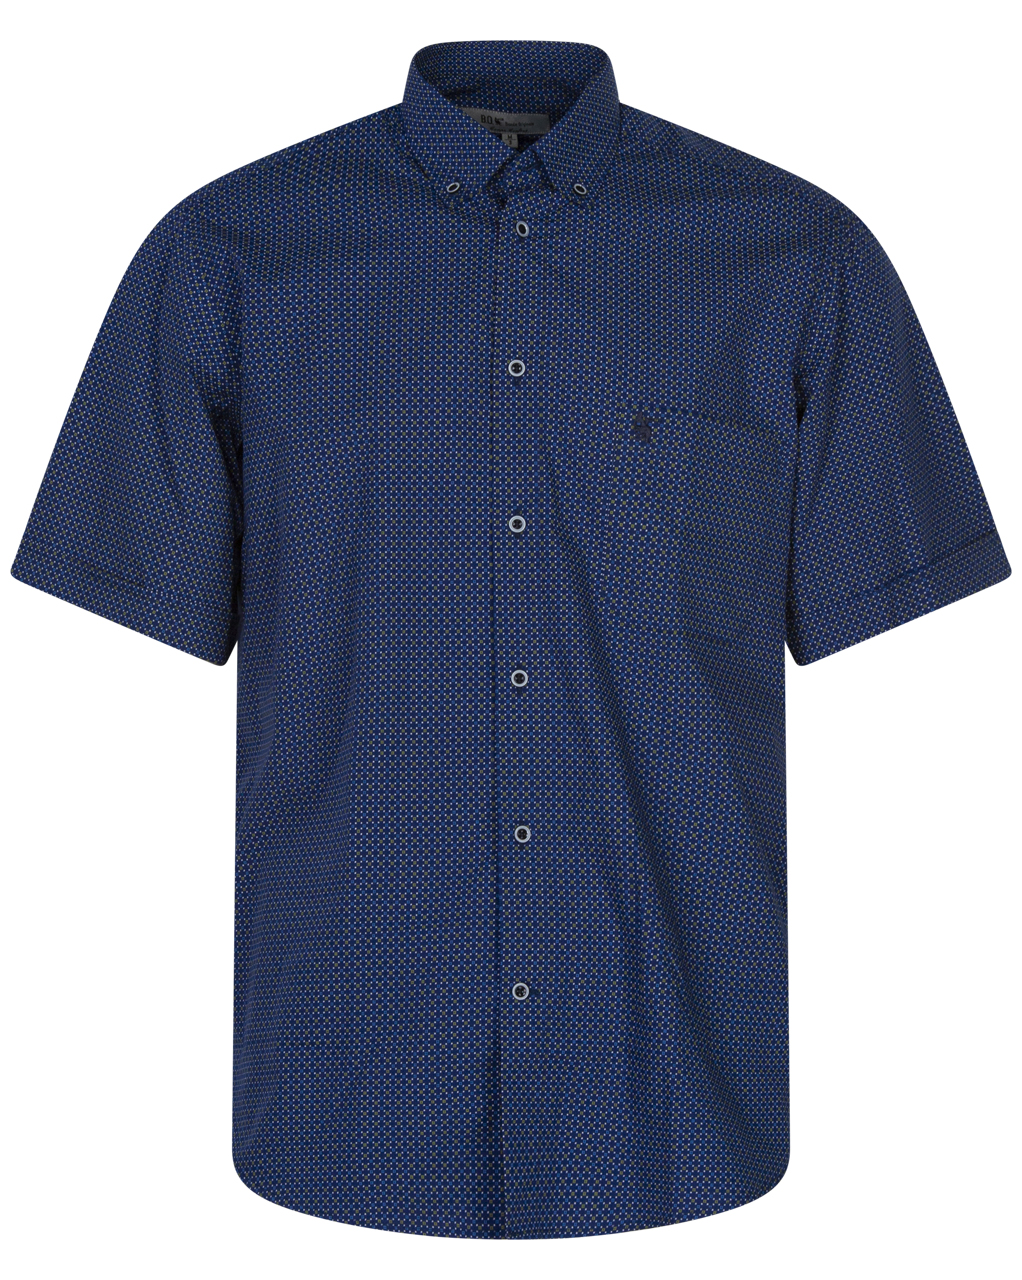 chemise manches courtes et col boutonné bande originale en coton bleu marine